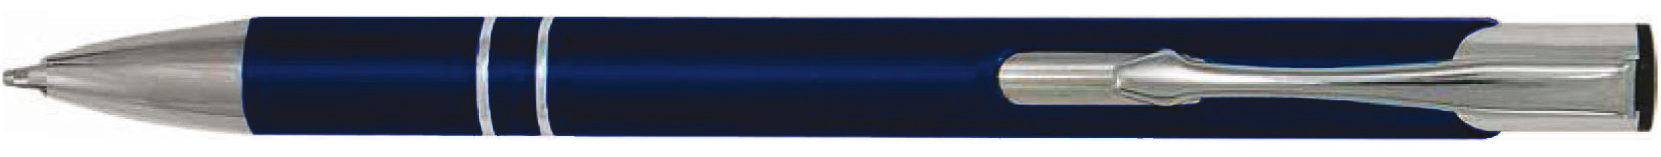 BestPen - penna promozionale in metallo con incisione C-24